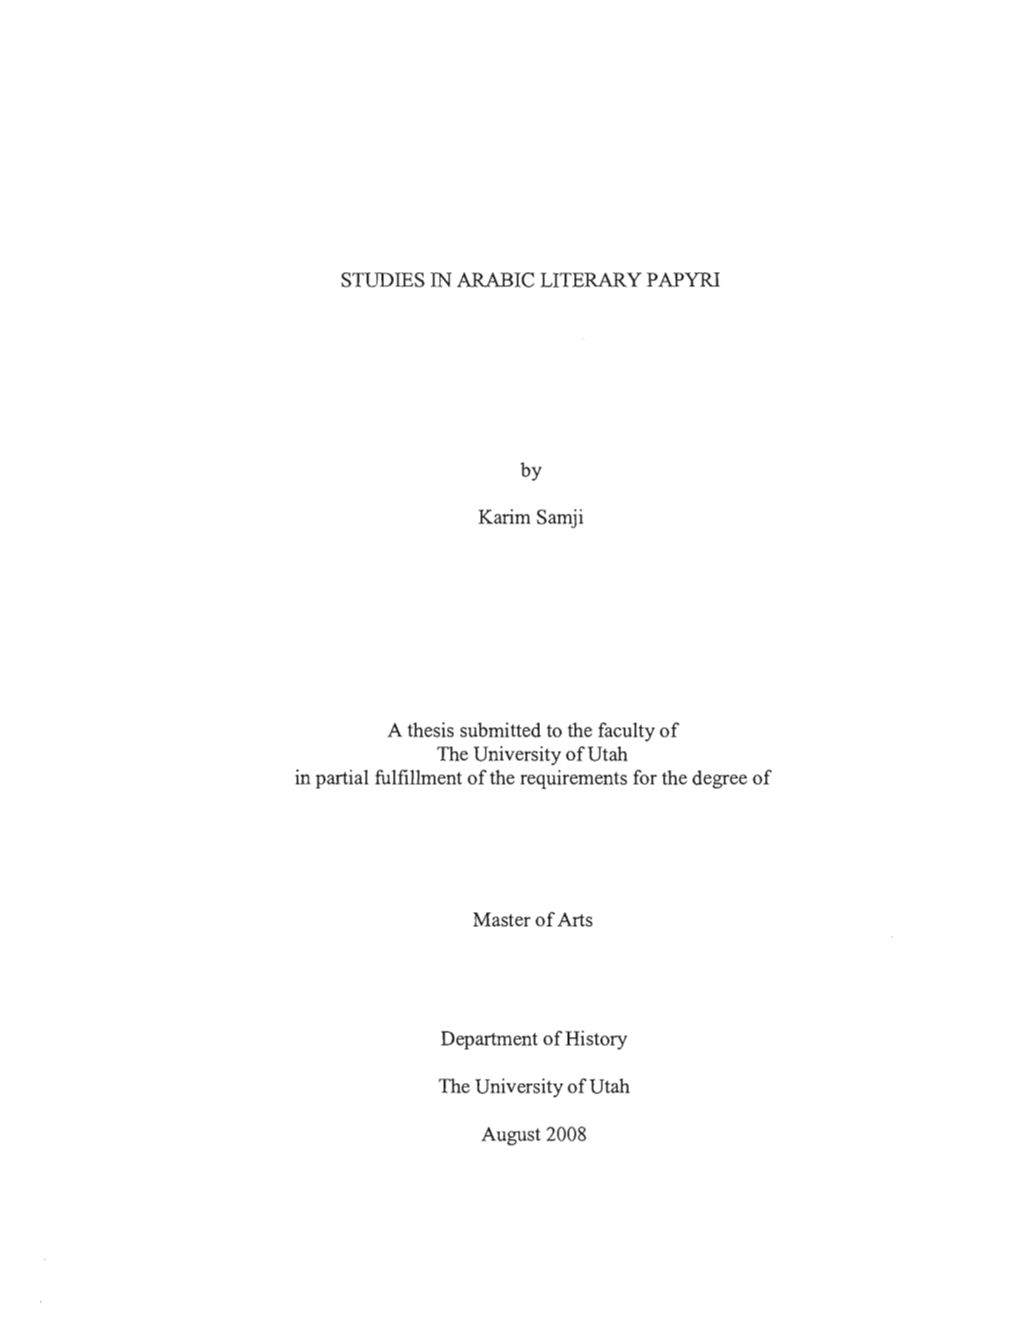 Studies in Arabic Literary Papyri, 3 Vols.Vols